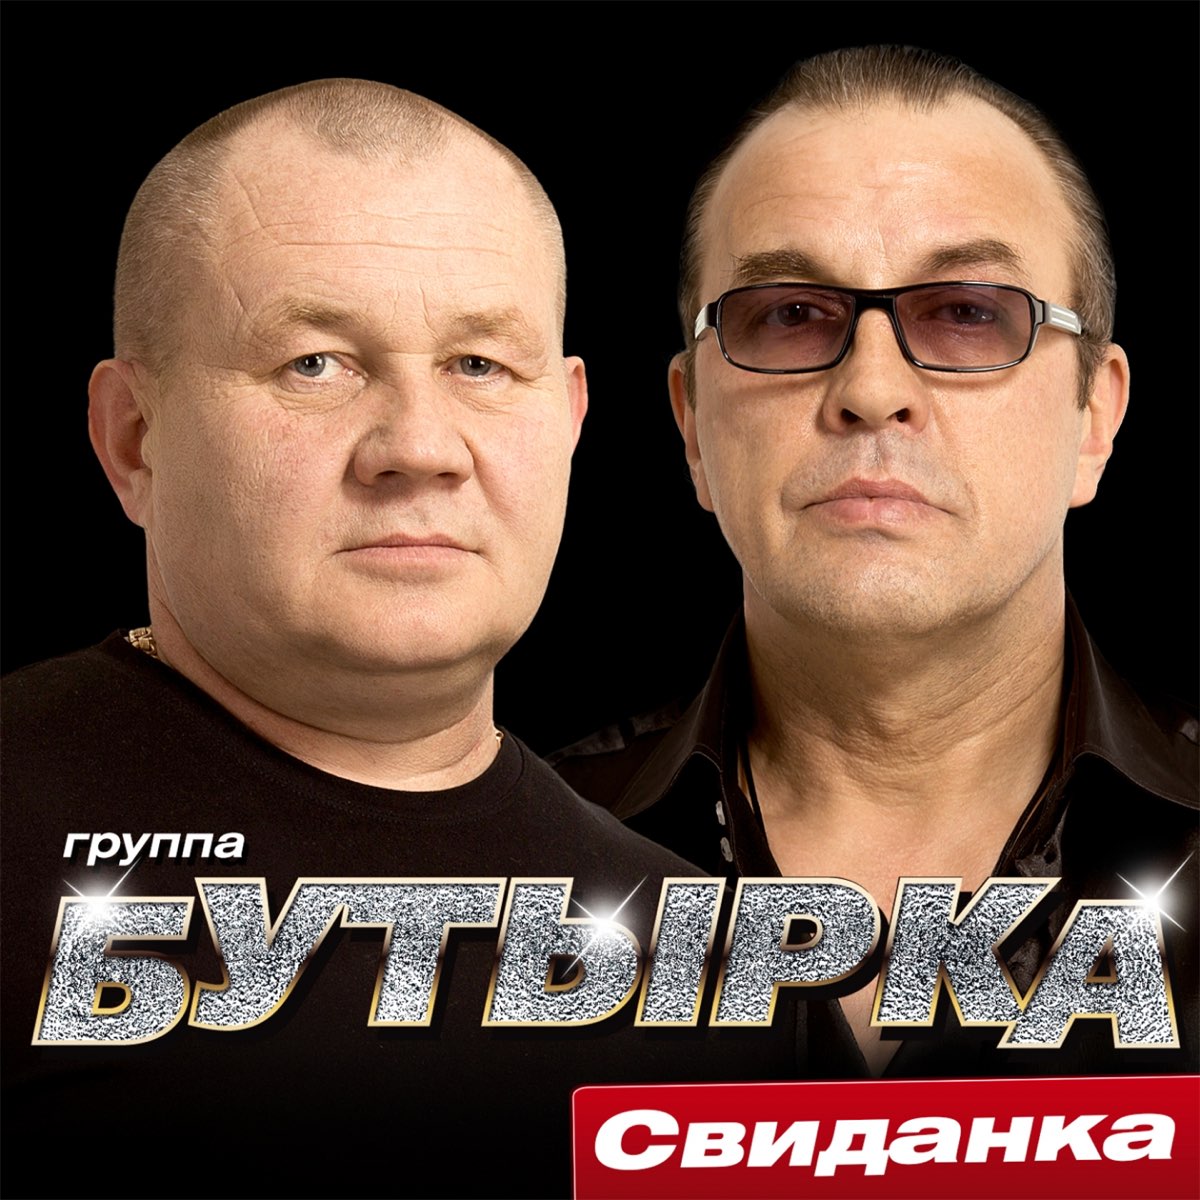 Группа бутырка 2015 - Свиданка